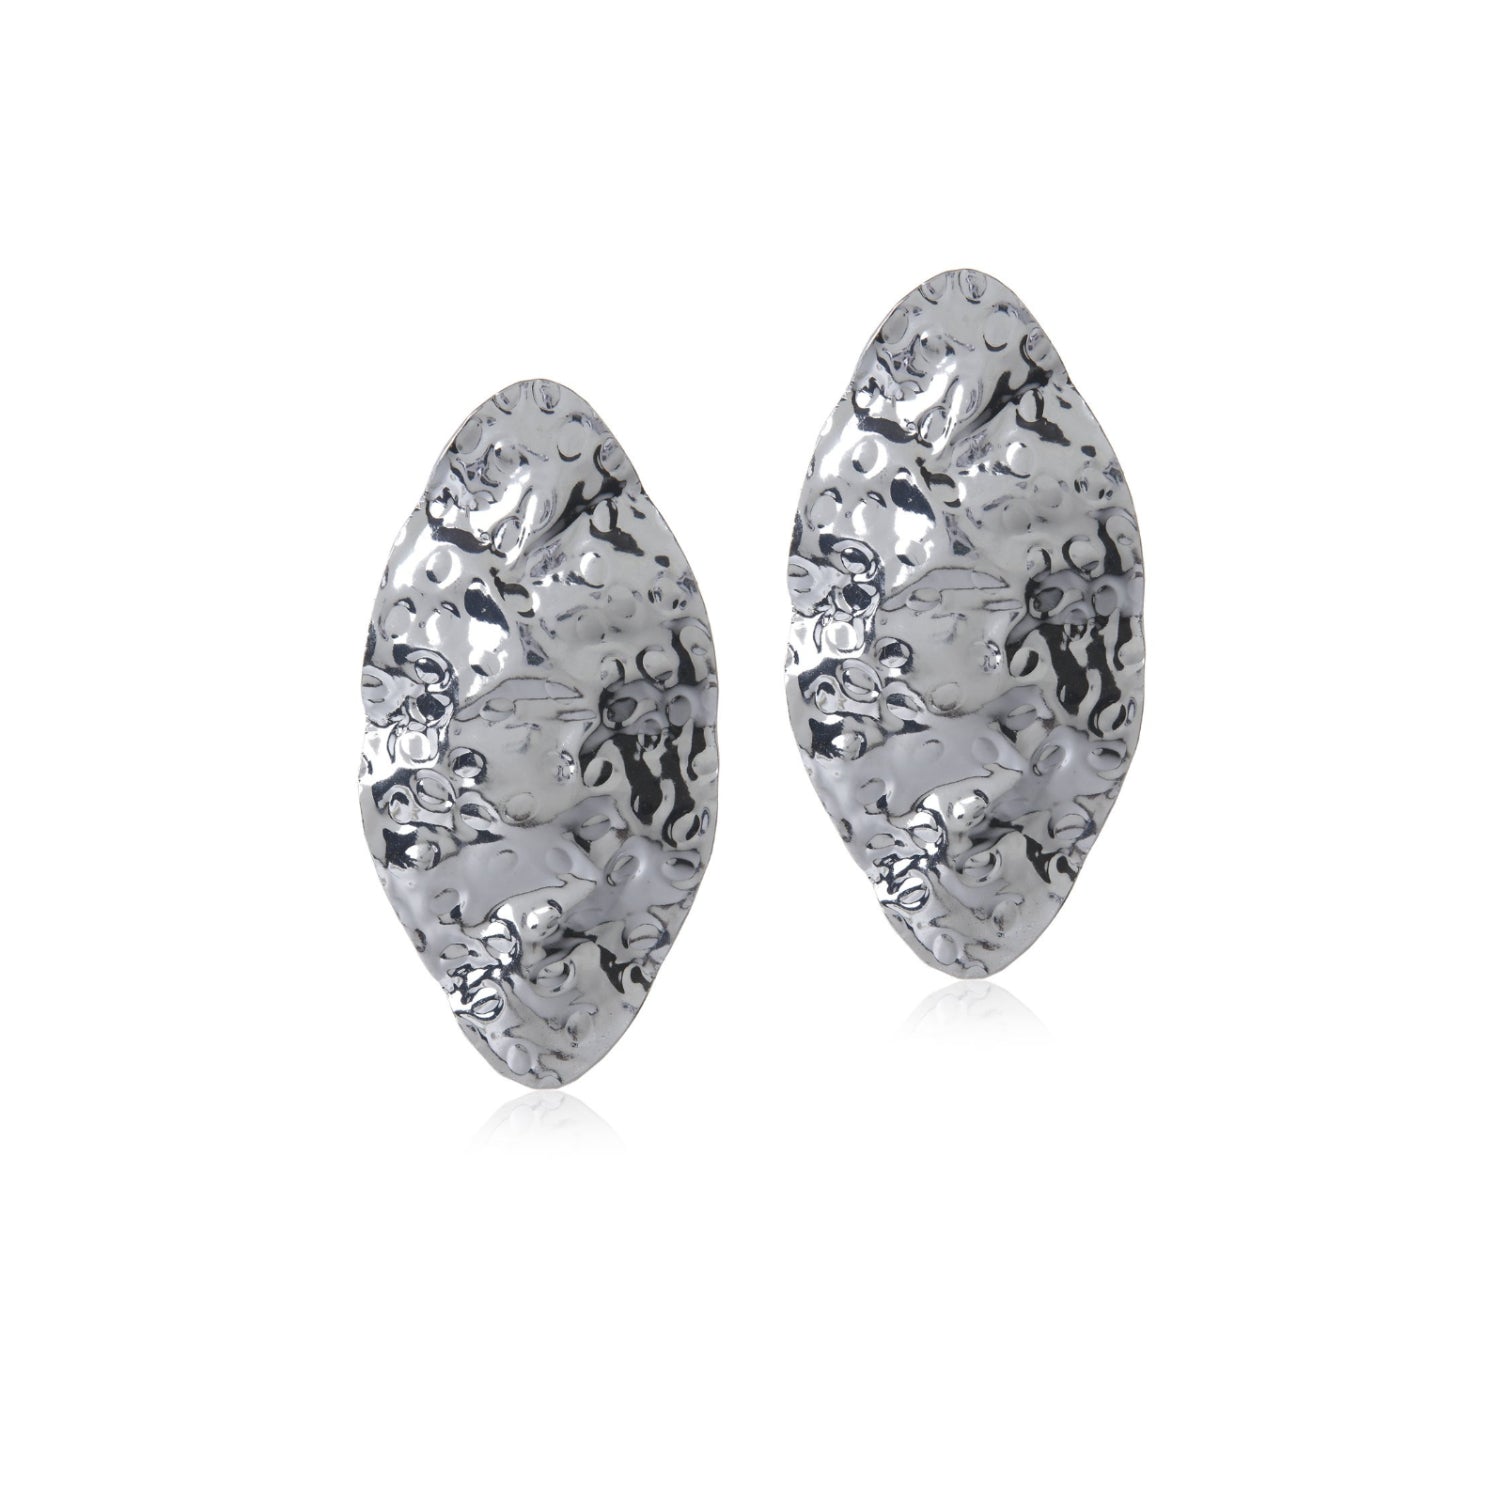 Beaten Metal Oval Earrings (Silver)